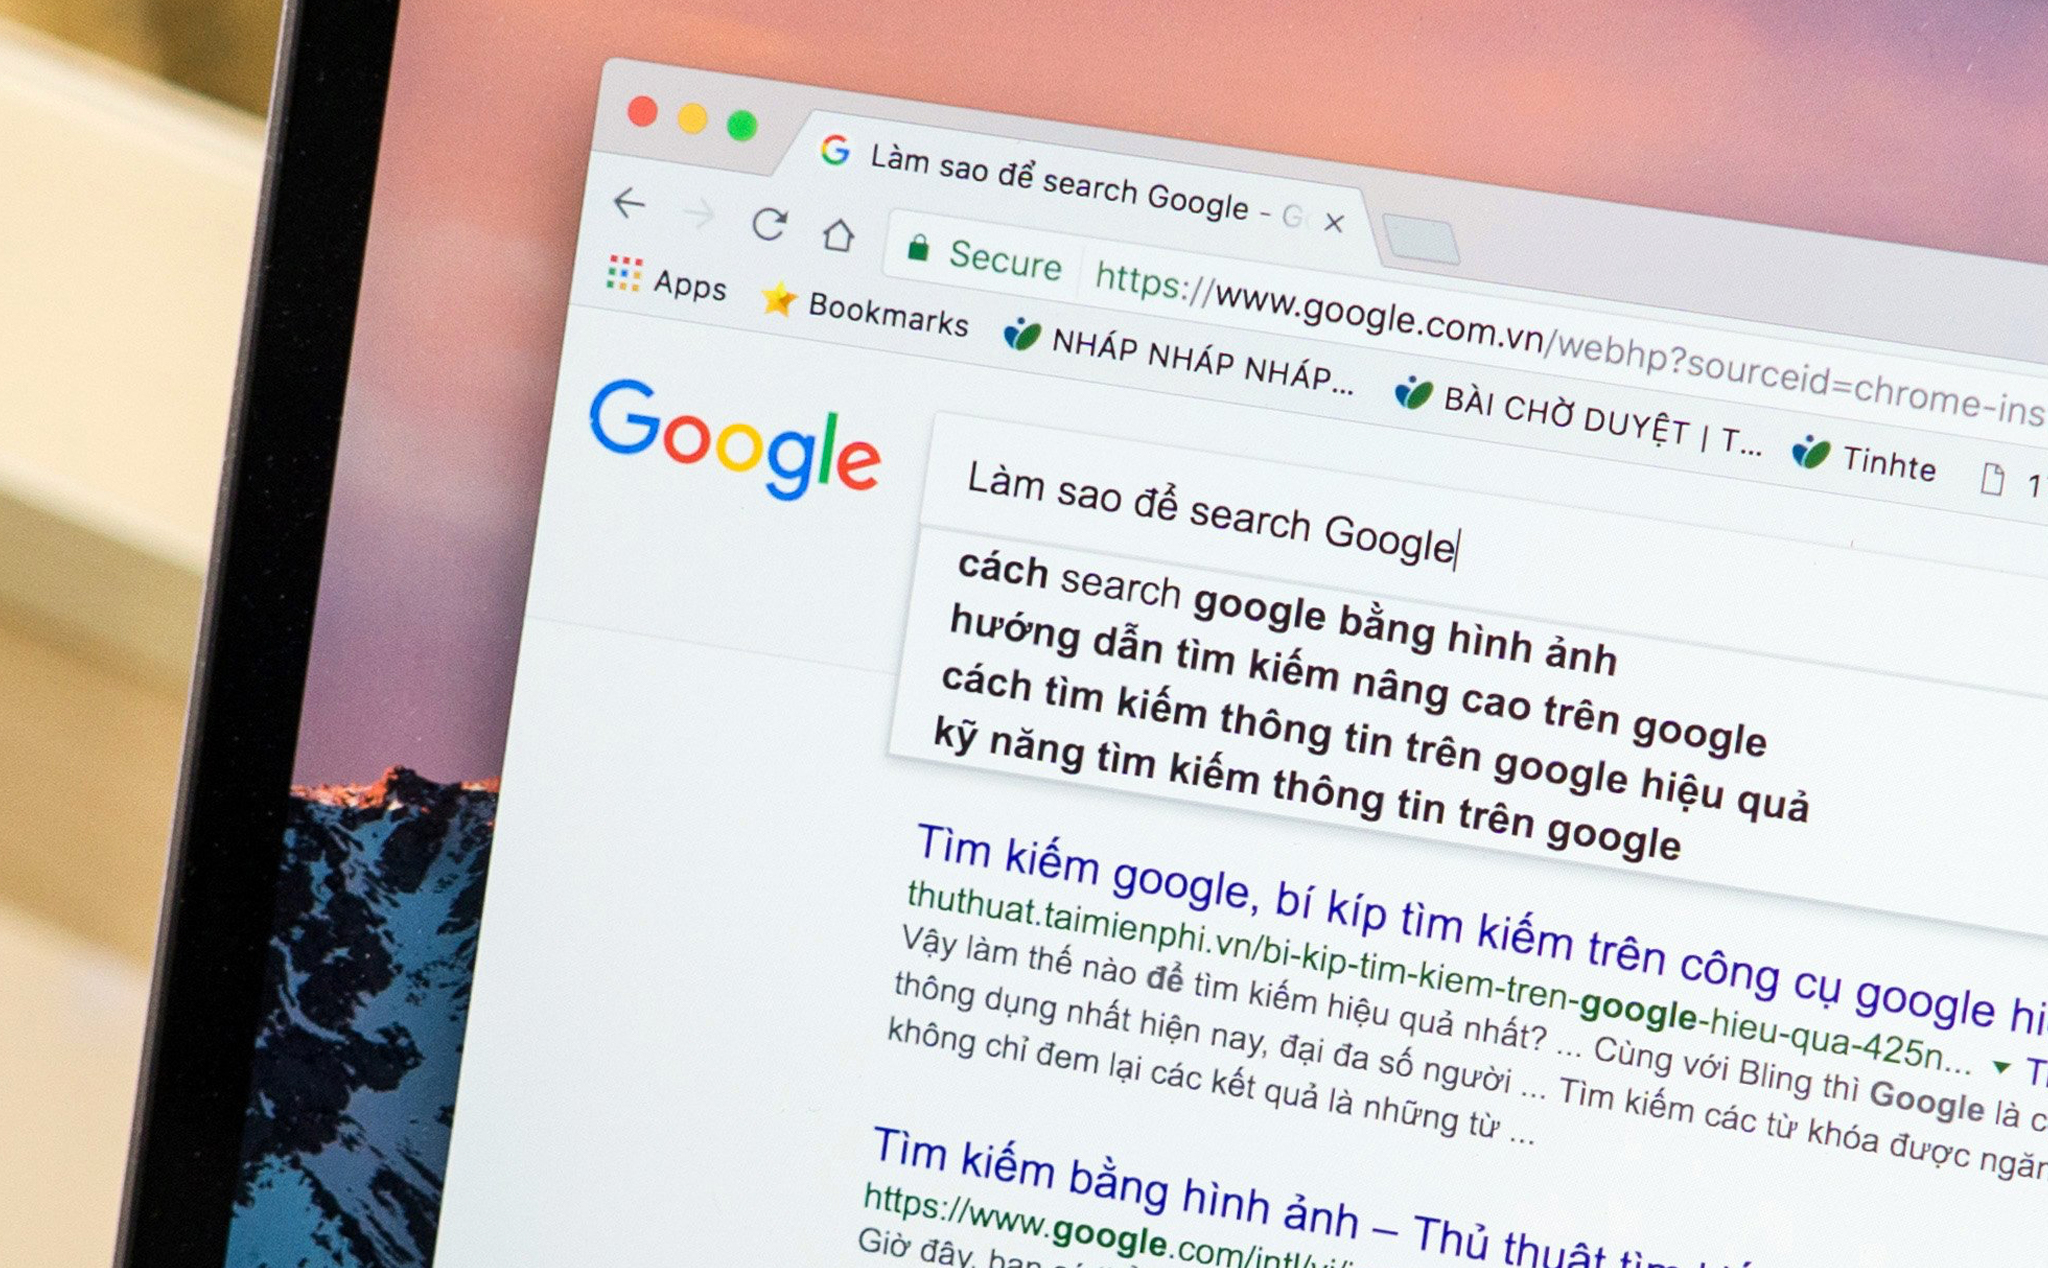 Xu hướng tìm kiếm Google của người Việt trong năm 2020